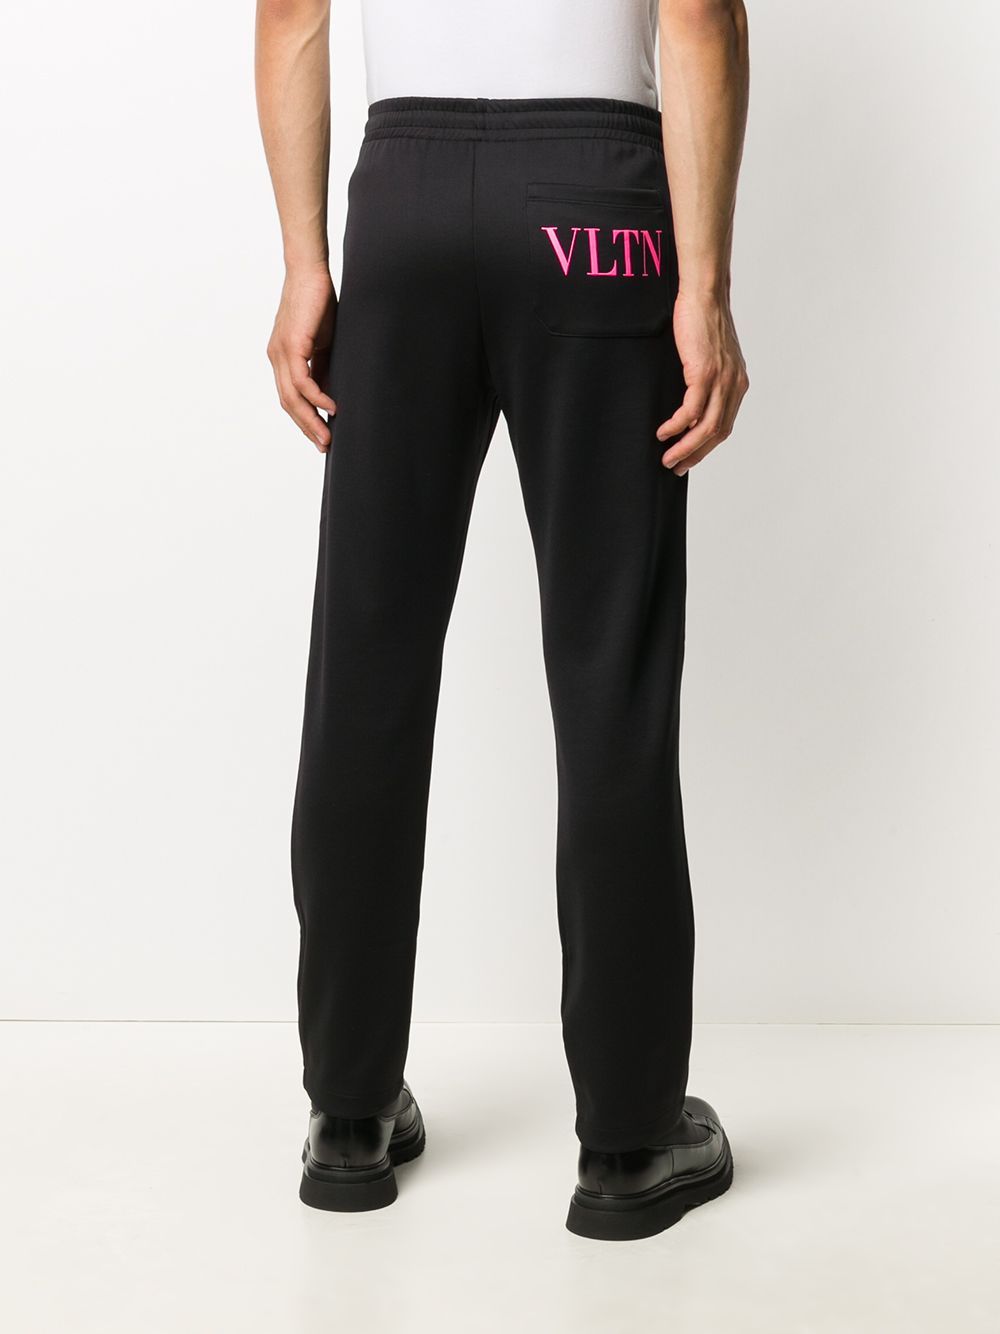 фото Valentino спортивные брюки с логотипом